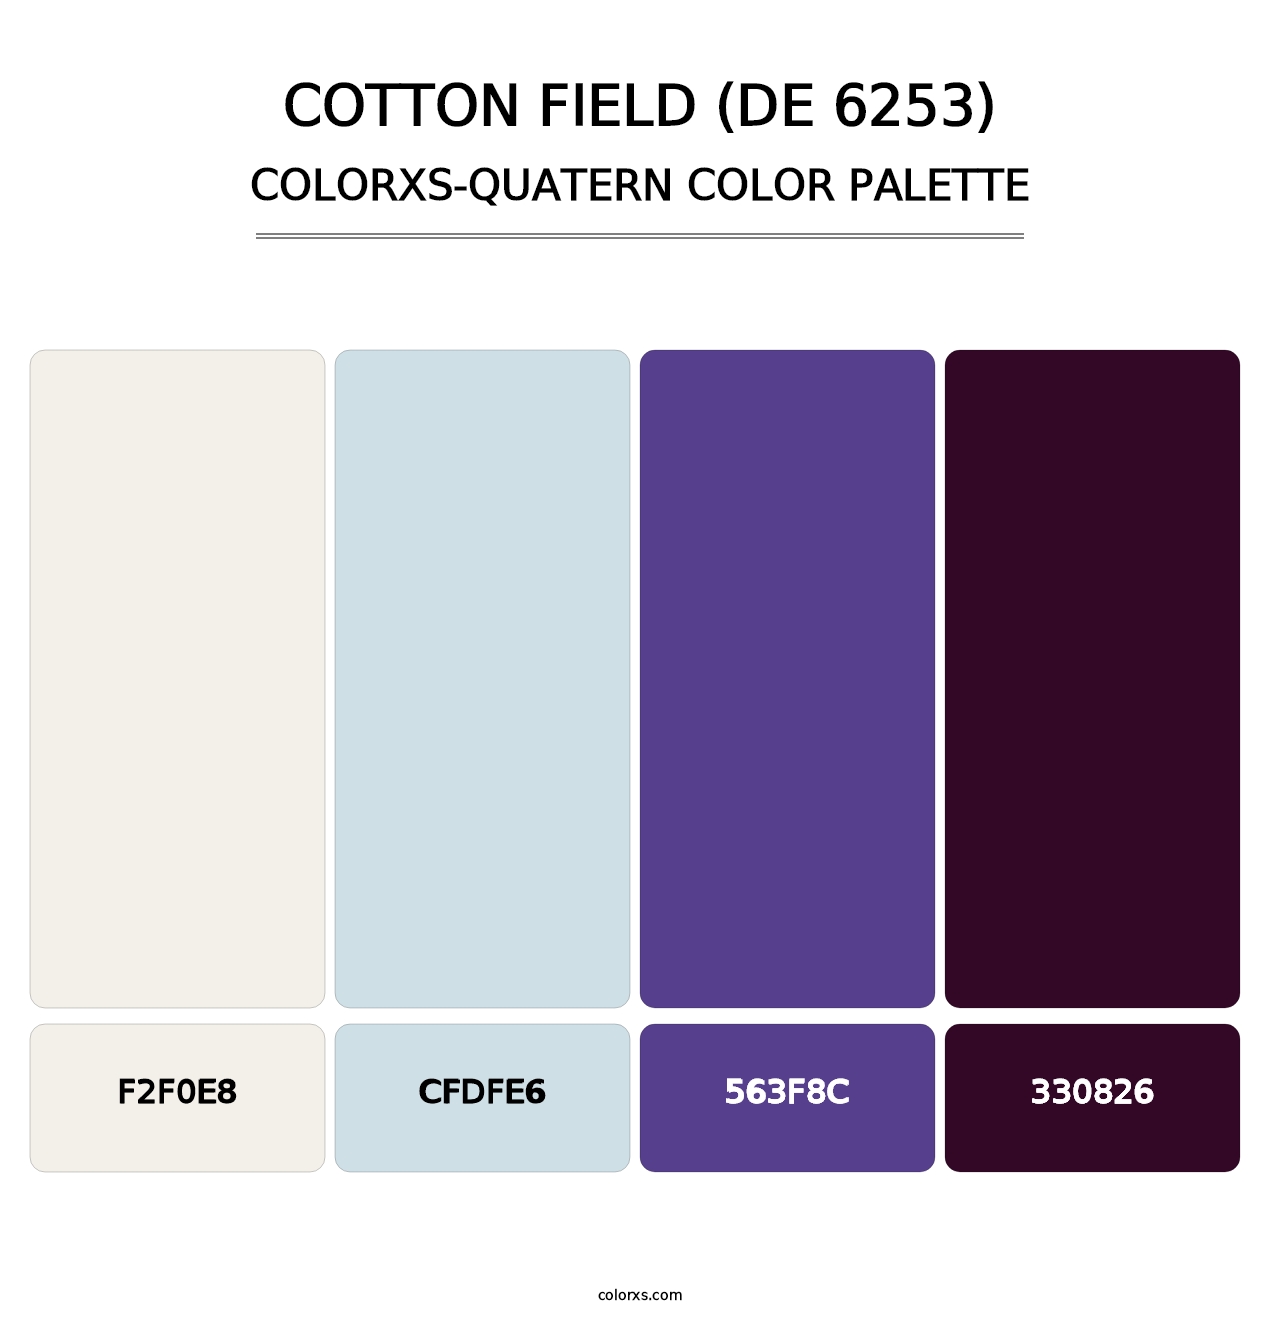 Cotton Field (DE 6253) - Colorxs Quatern Palette